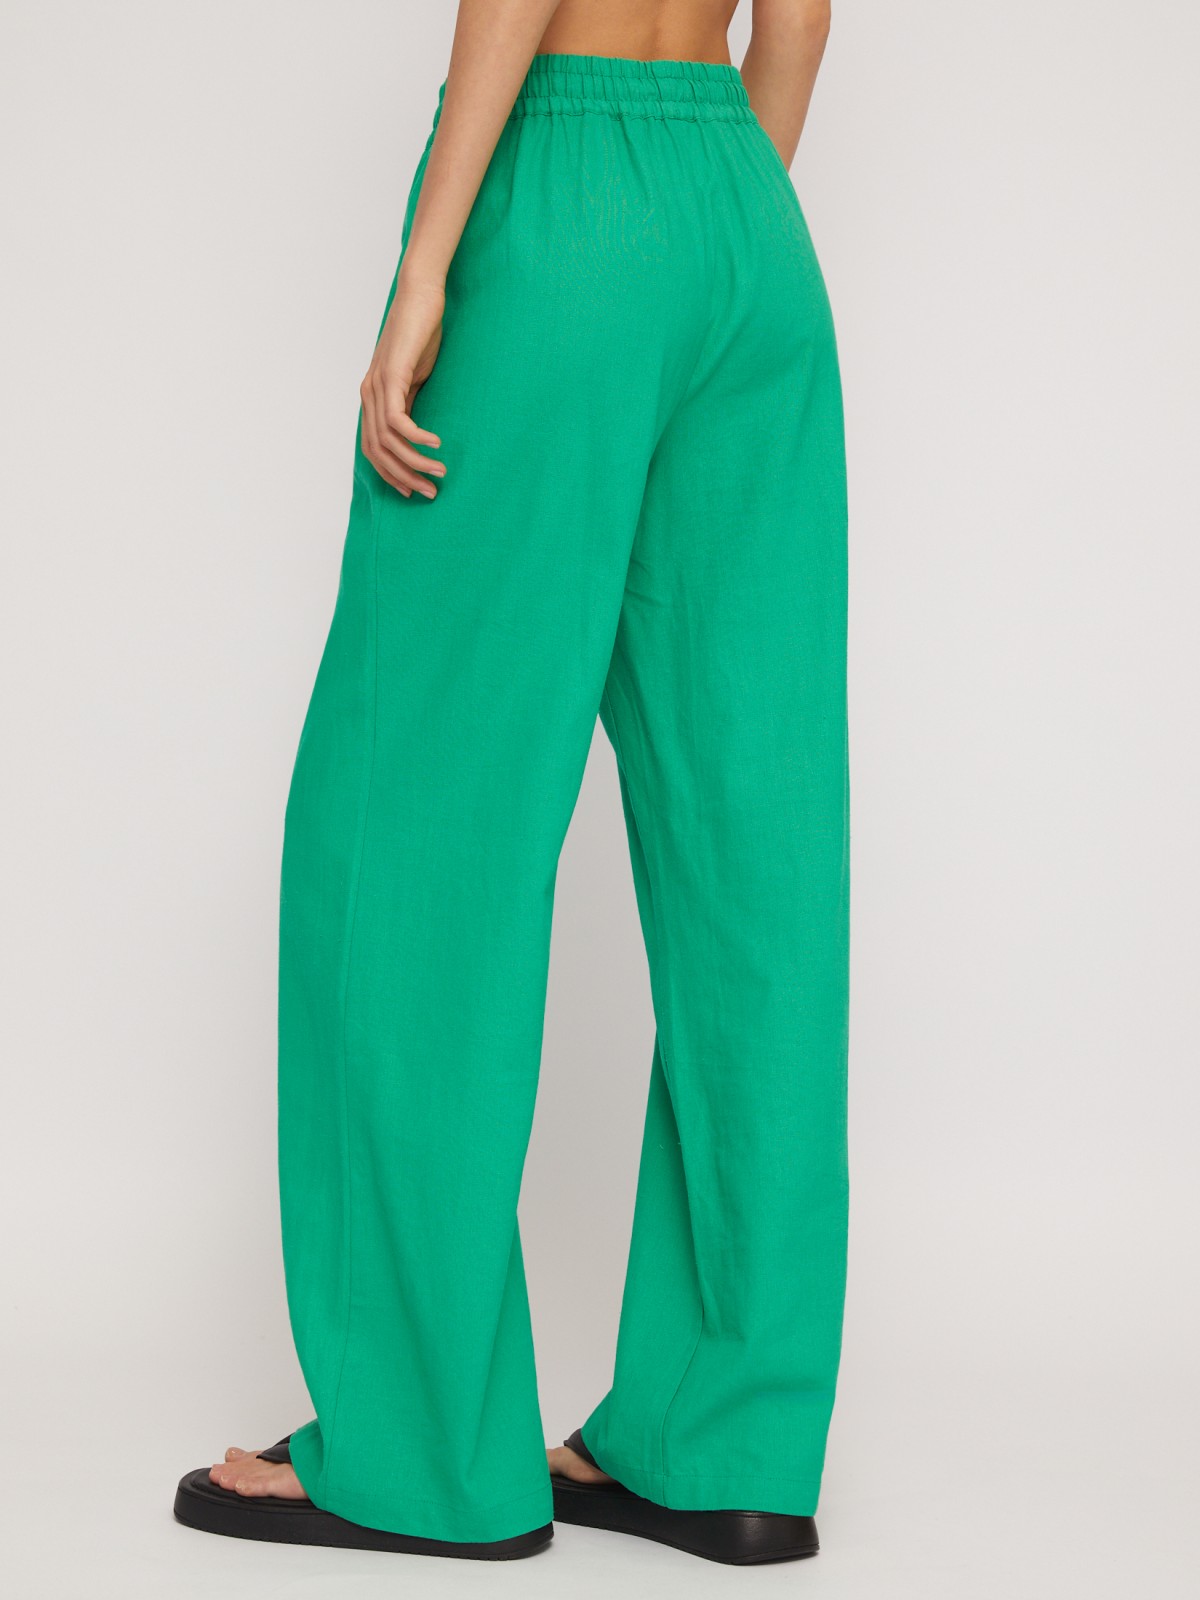 Льняные брюки на резинке с кулиской zolla 024247362053, цвет зеленый, размер S - фото 6